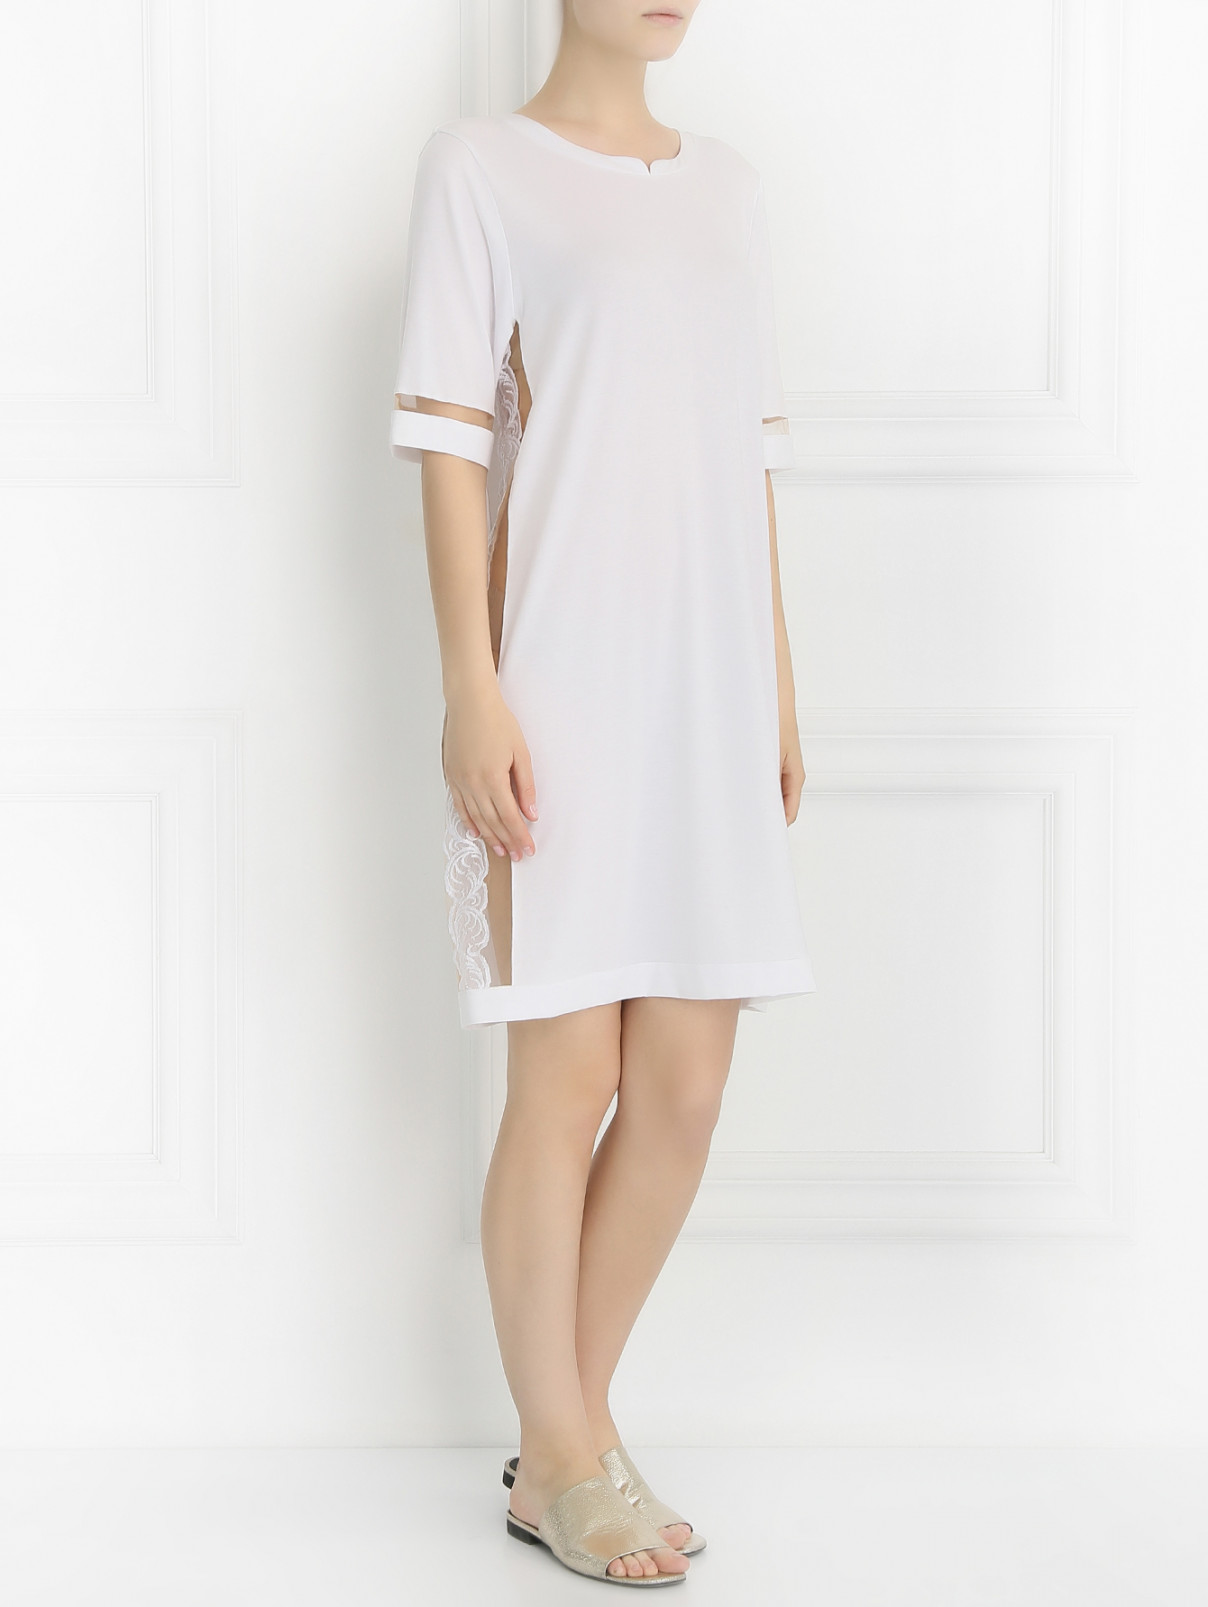 Сорочка со вставками из кружева La Perla  –  Модель Общий вид  – Цвет:  Белый